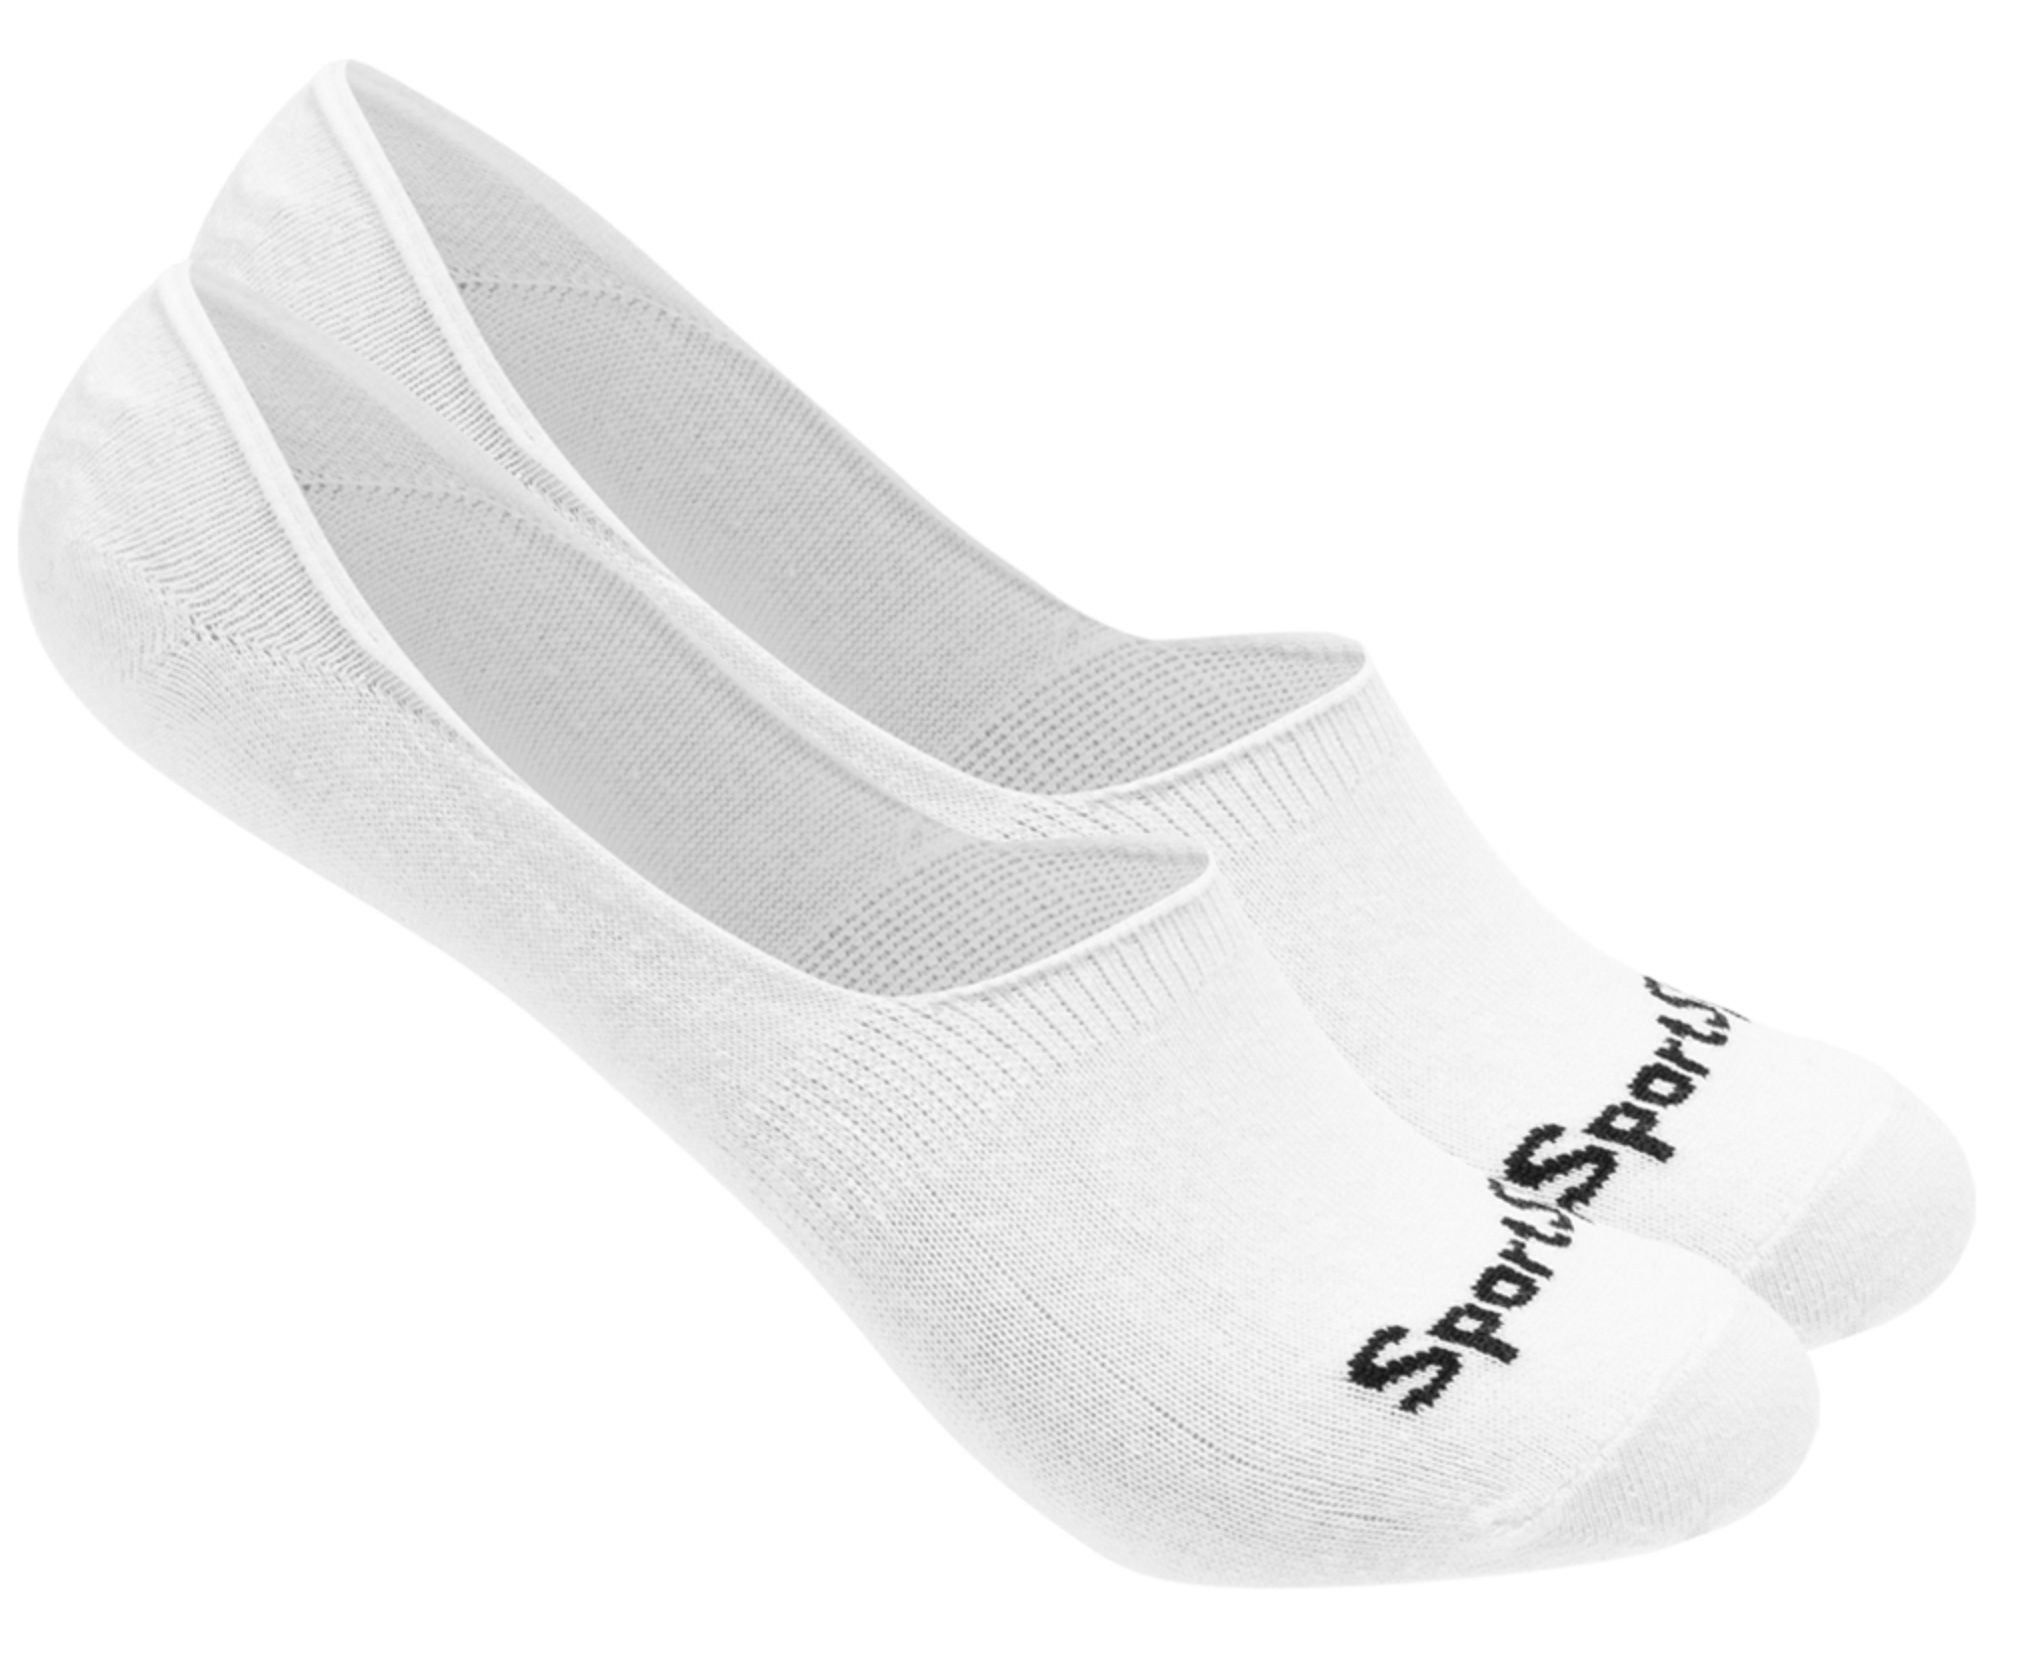 SportSpar Preissturz: z.B. 3 Paar Sneaker Socken für 1,11€